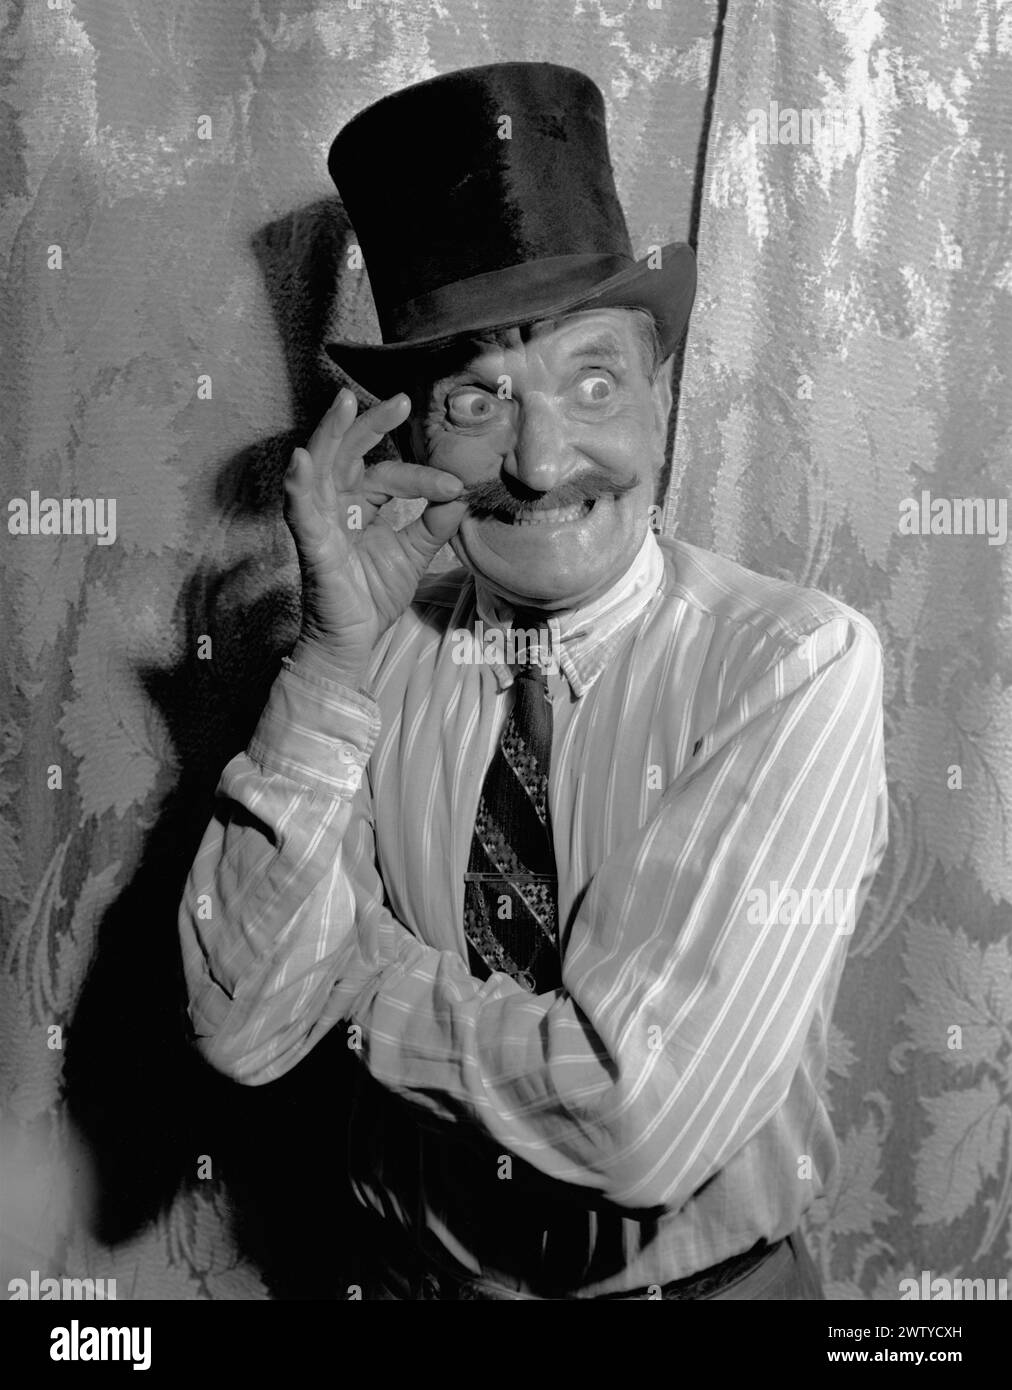 Ein älterer Mann mit Hemd und Krawatte, der einen Hut trägt, macht ein lustiges Gesicht mit prallen Augen, während er seinen Schnurrbart dreht. Um 1950 Stockfoto